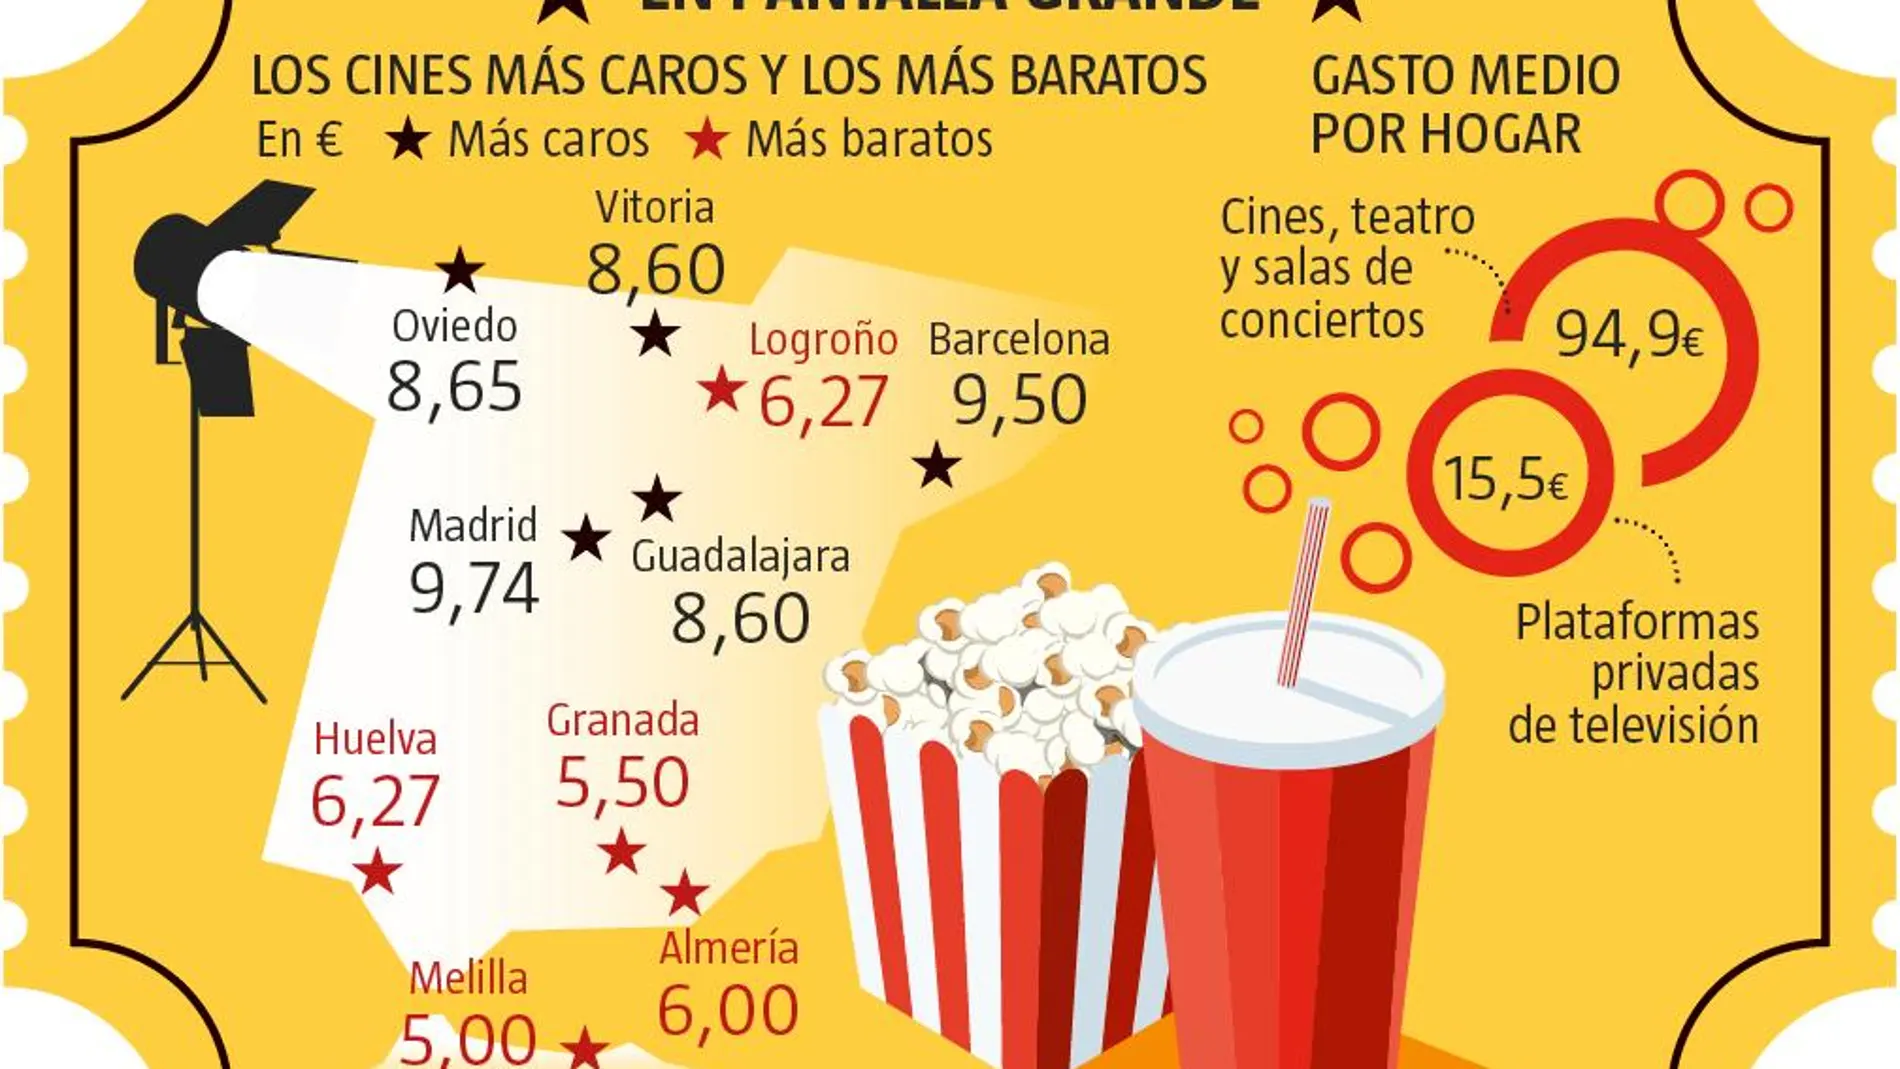 Coste de los cines y gasto medio por hogar